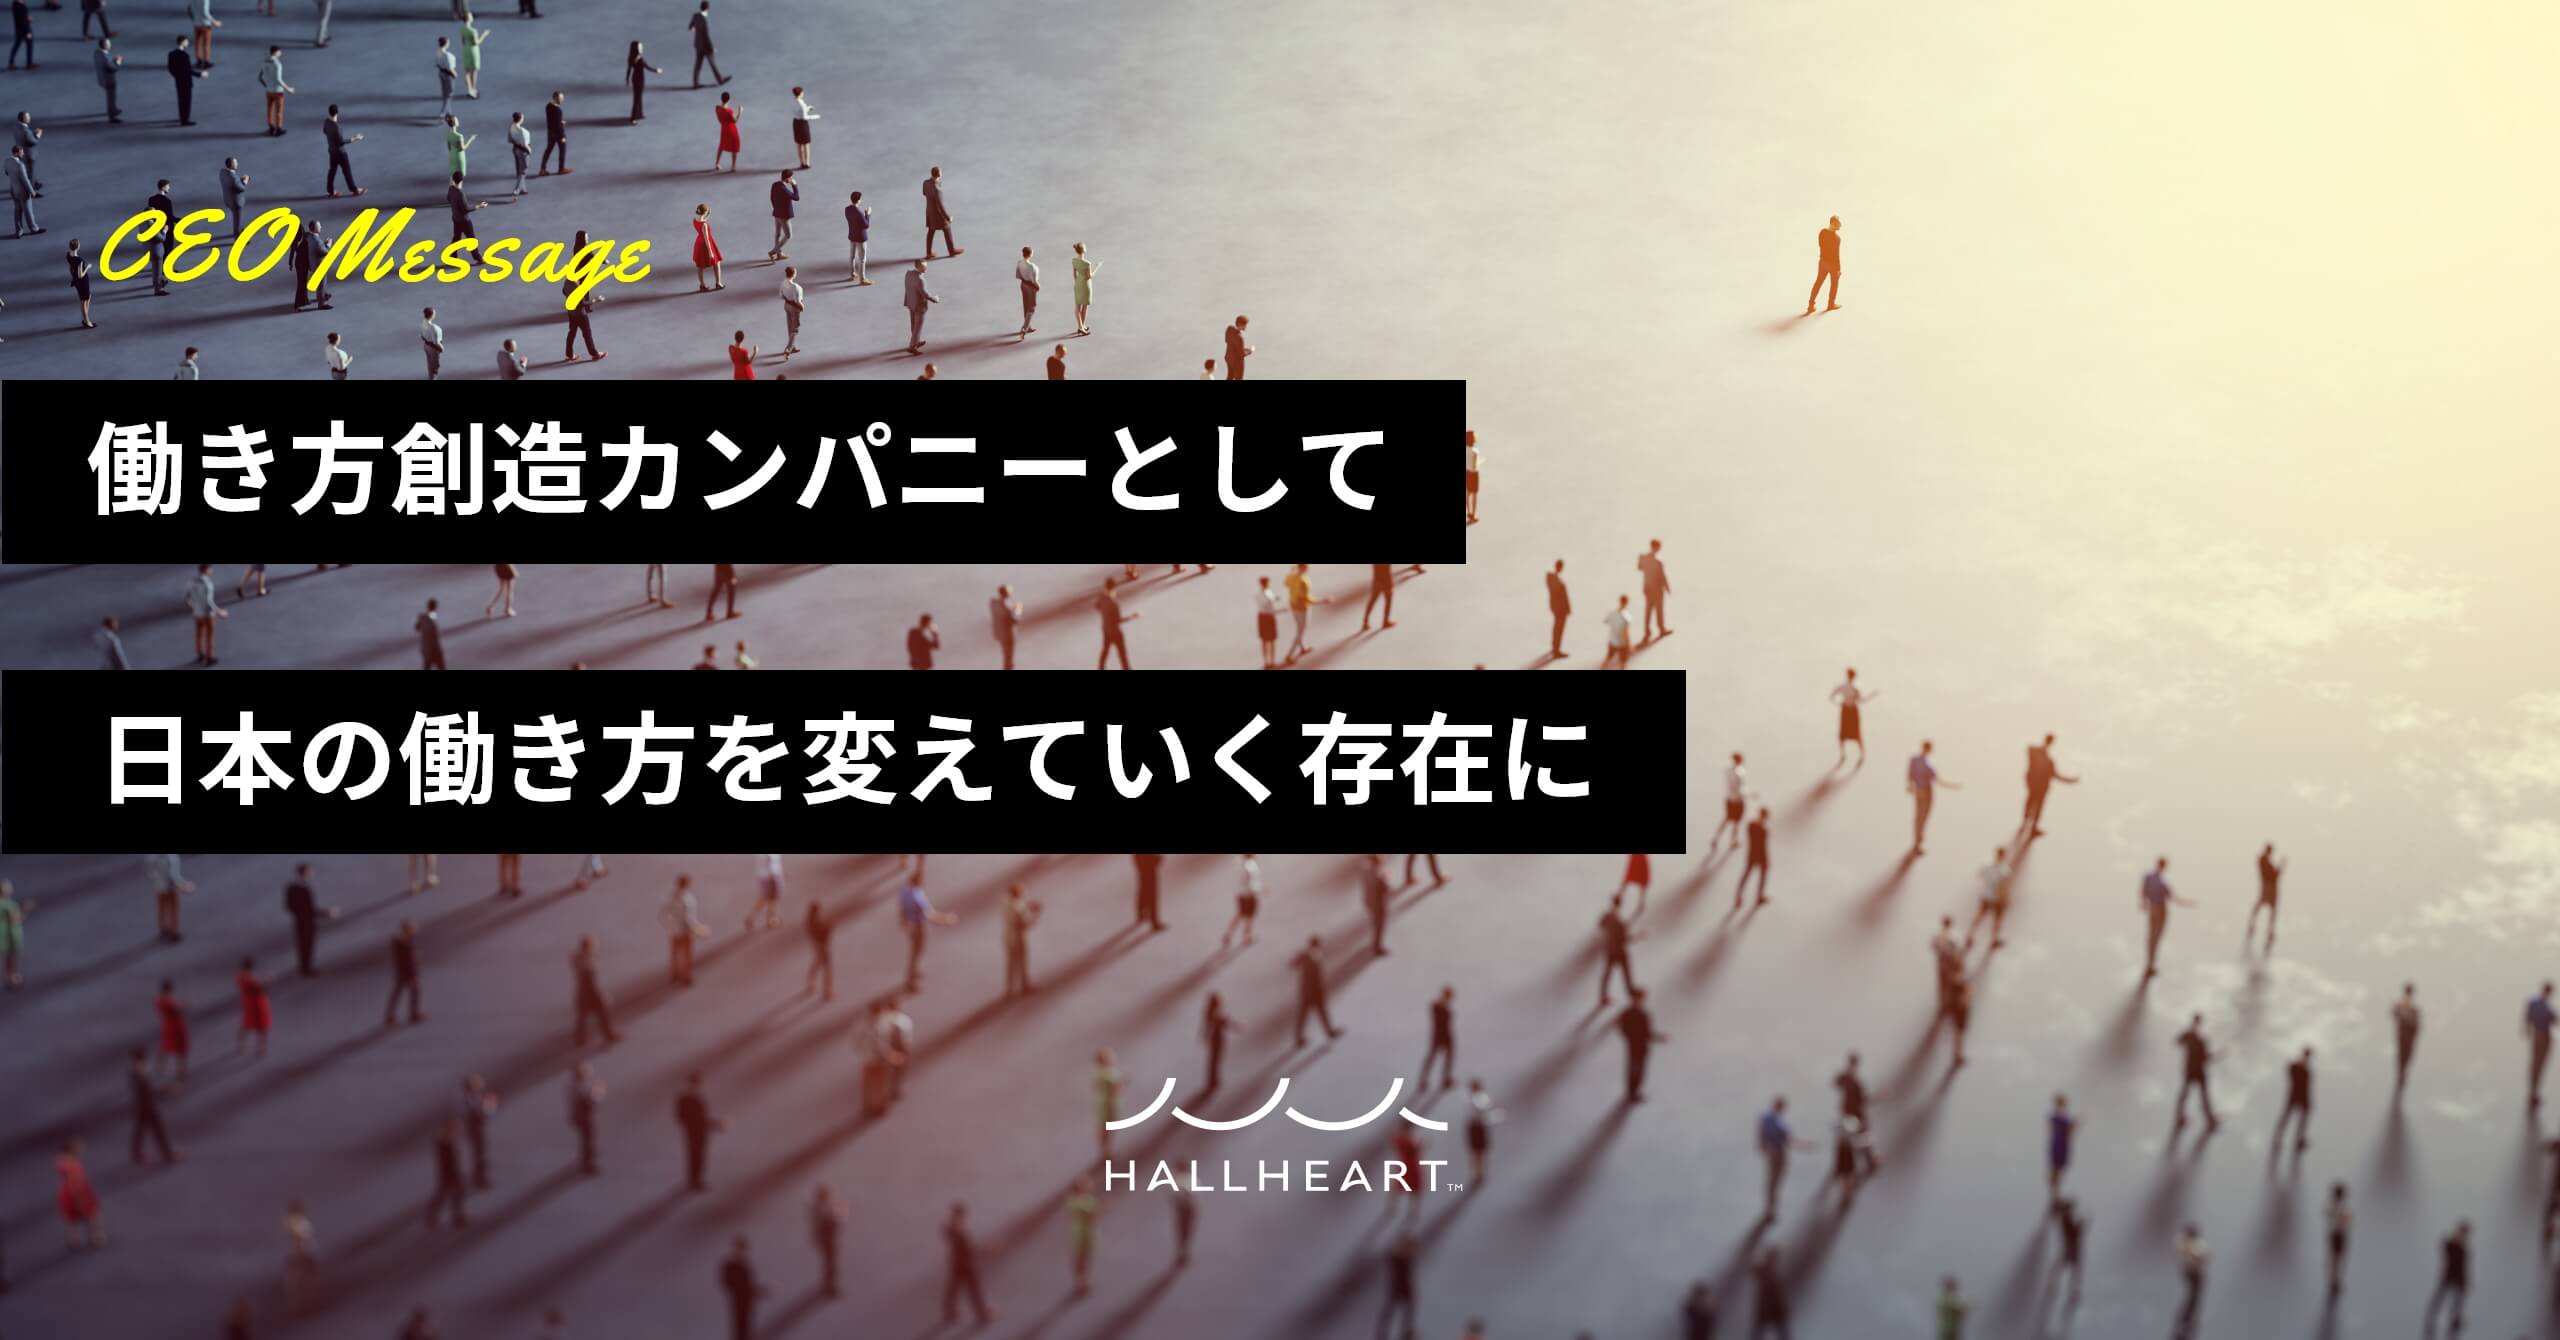 CEO Message『働き方創造カンパニーとして日本の働き方を変えていく存在に』HALLHEART